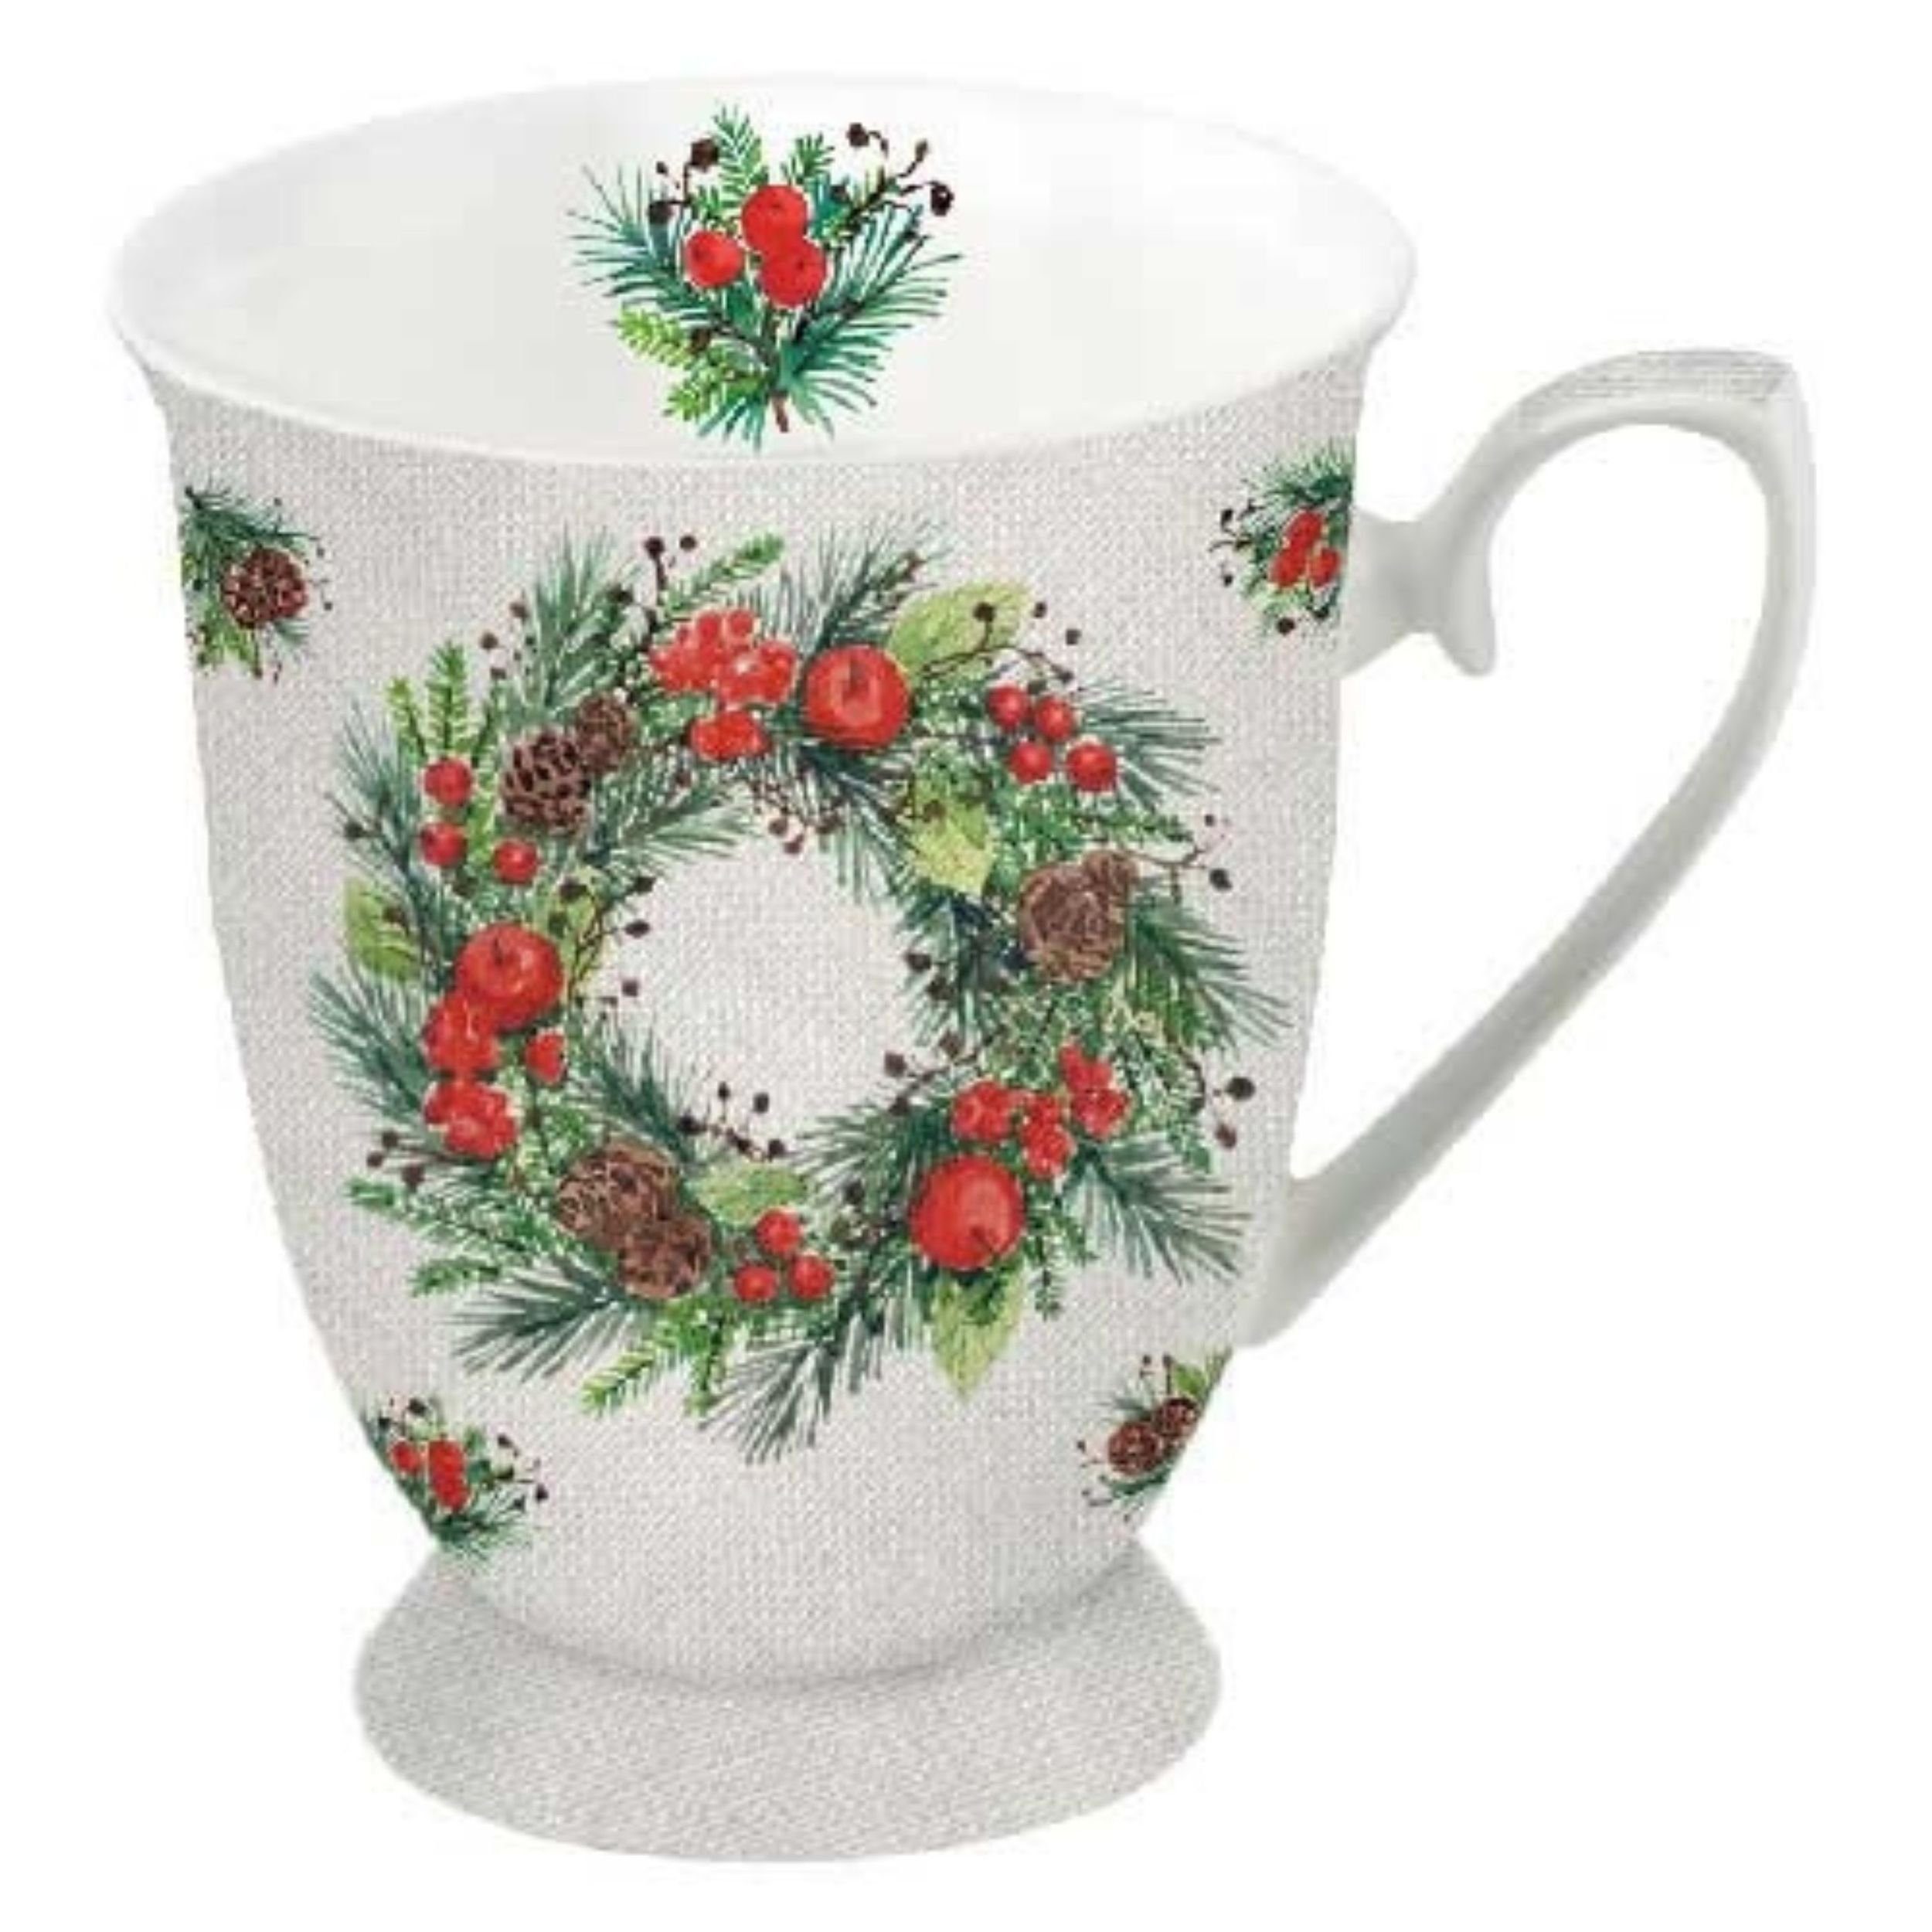 Ambiente Luxury Paper Products Becher Porzellan Weihnachten Tasse Kaffeebecher 'Wreath on Linen' 0,25l